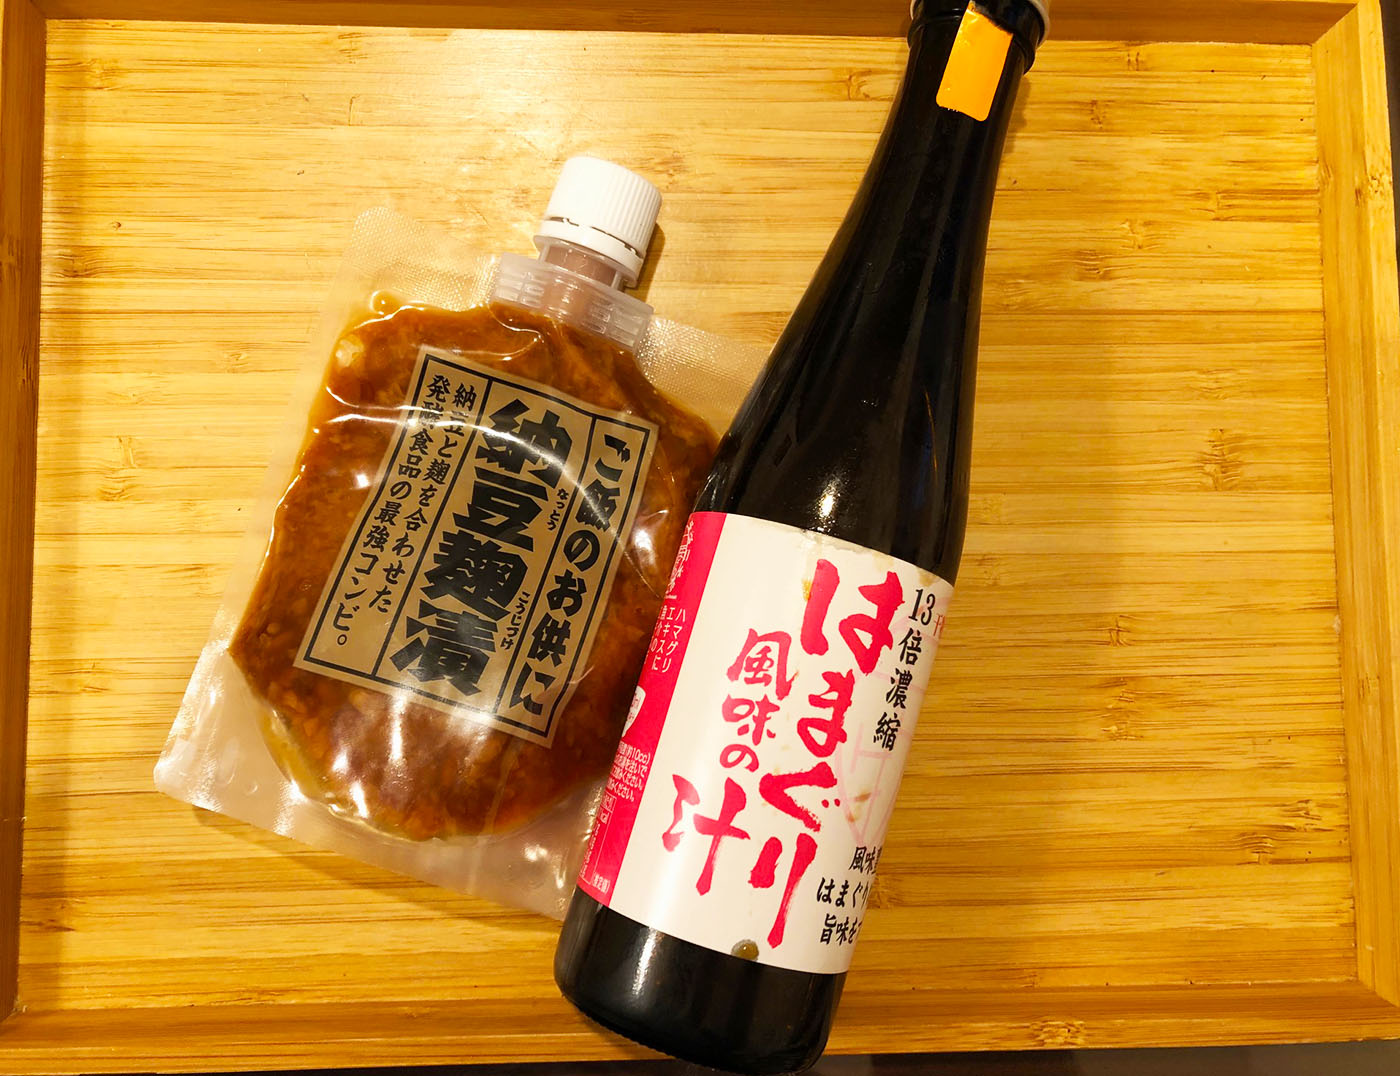 浦和西口そうめん専門店「和うさぎ」の売店で購入したはまぐり汁と納豆麹漬け